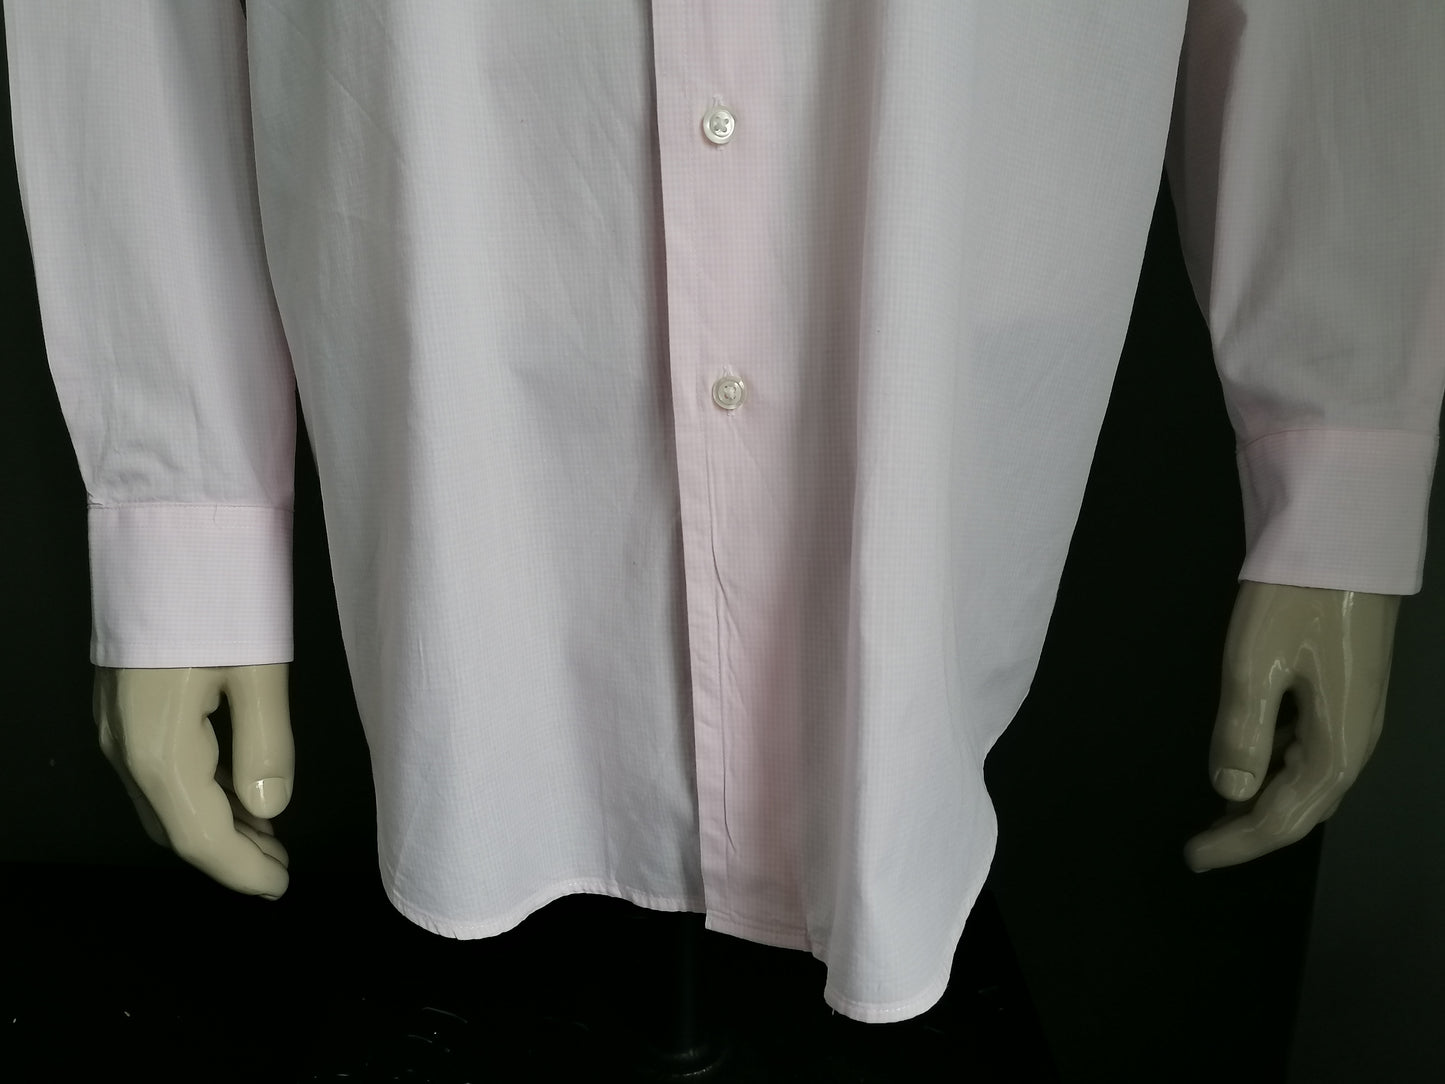 Motivo bianco rosa della camicia di nautica. Taglia XXL / 2XL